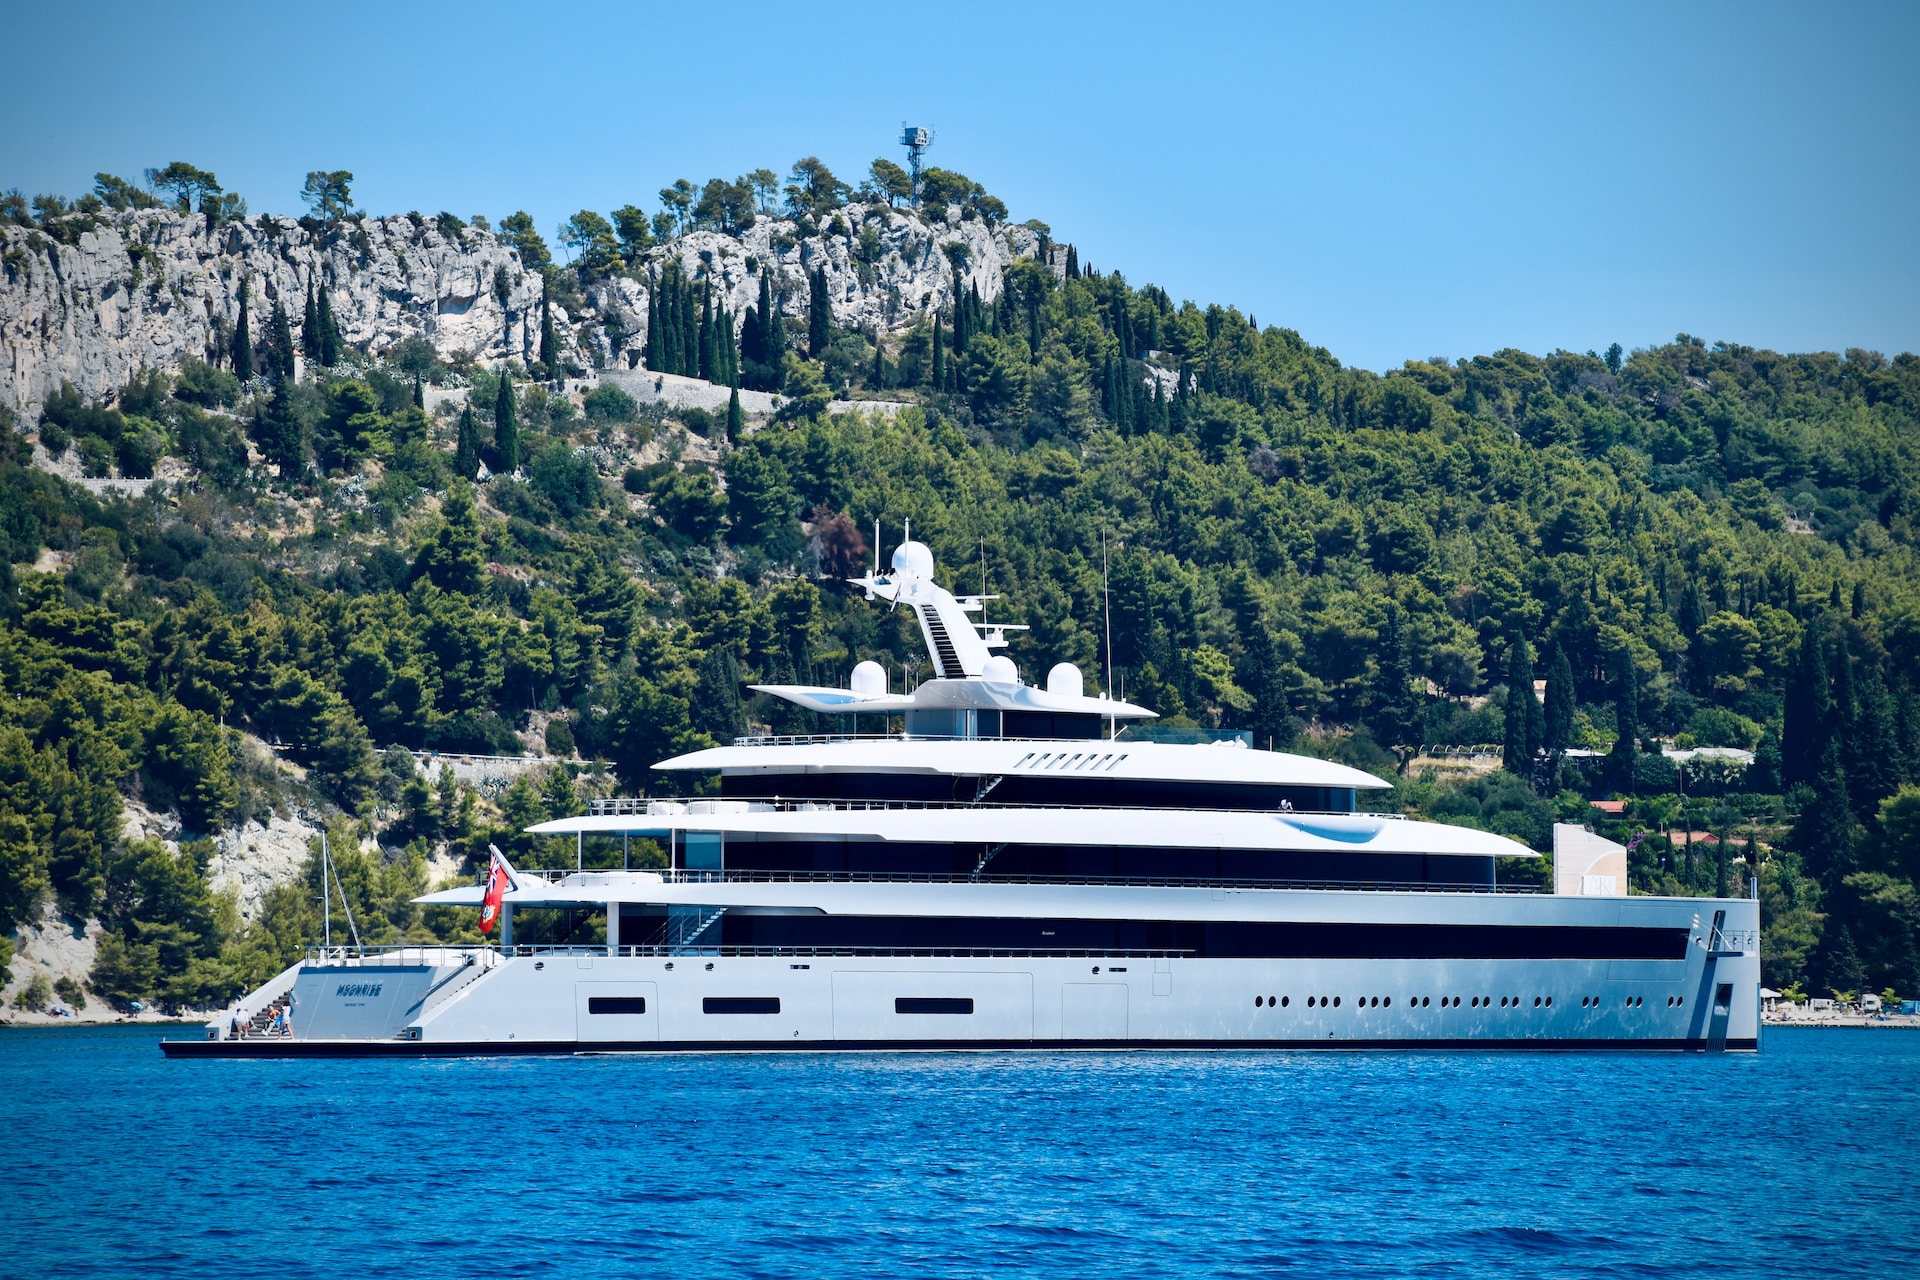 Hrvaško morje to poletje popularno med svetovno znanimi zvezdniki in miljarderji